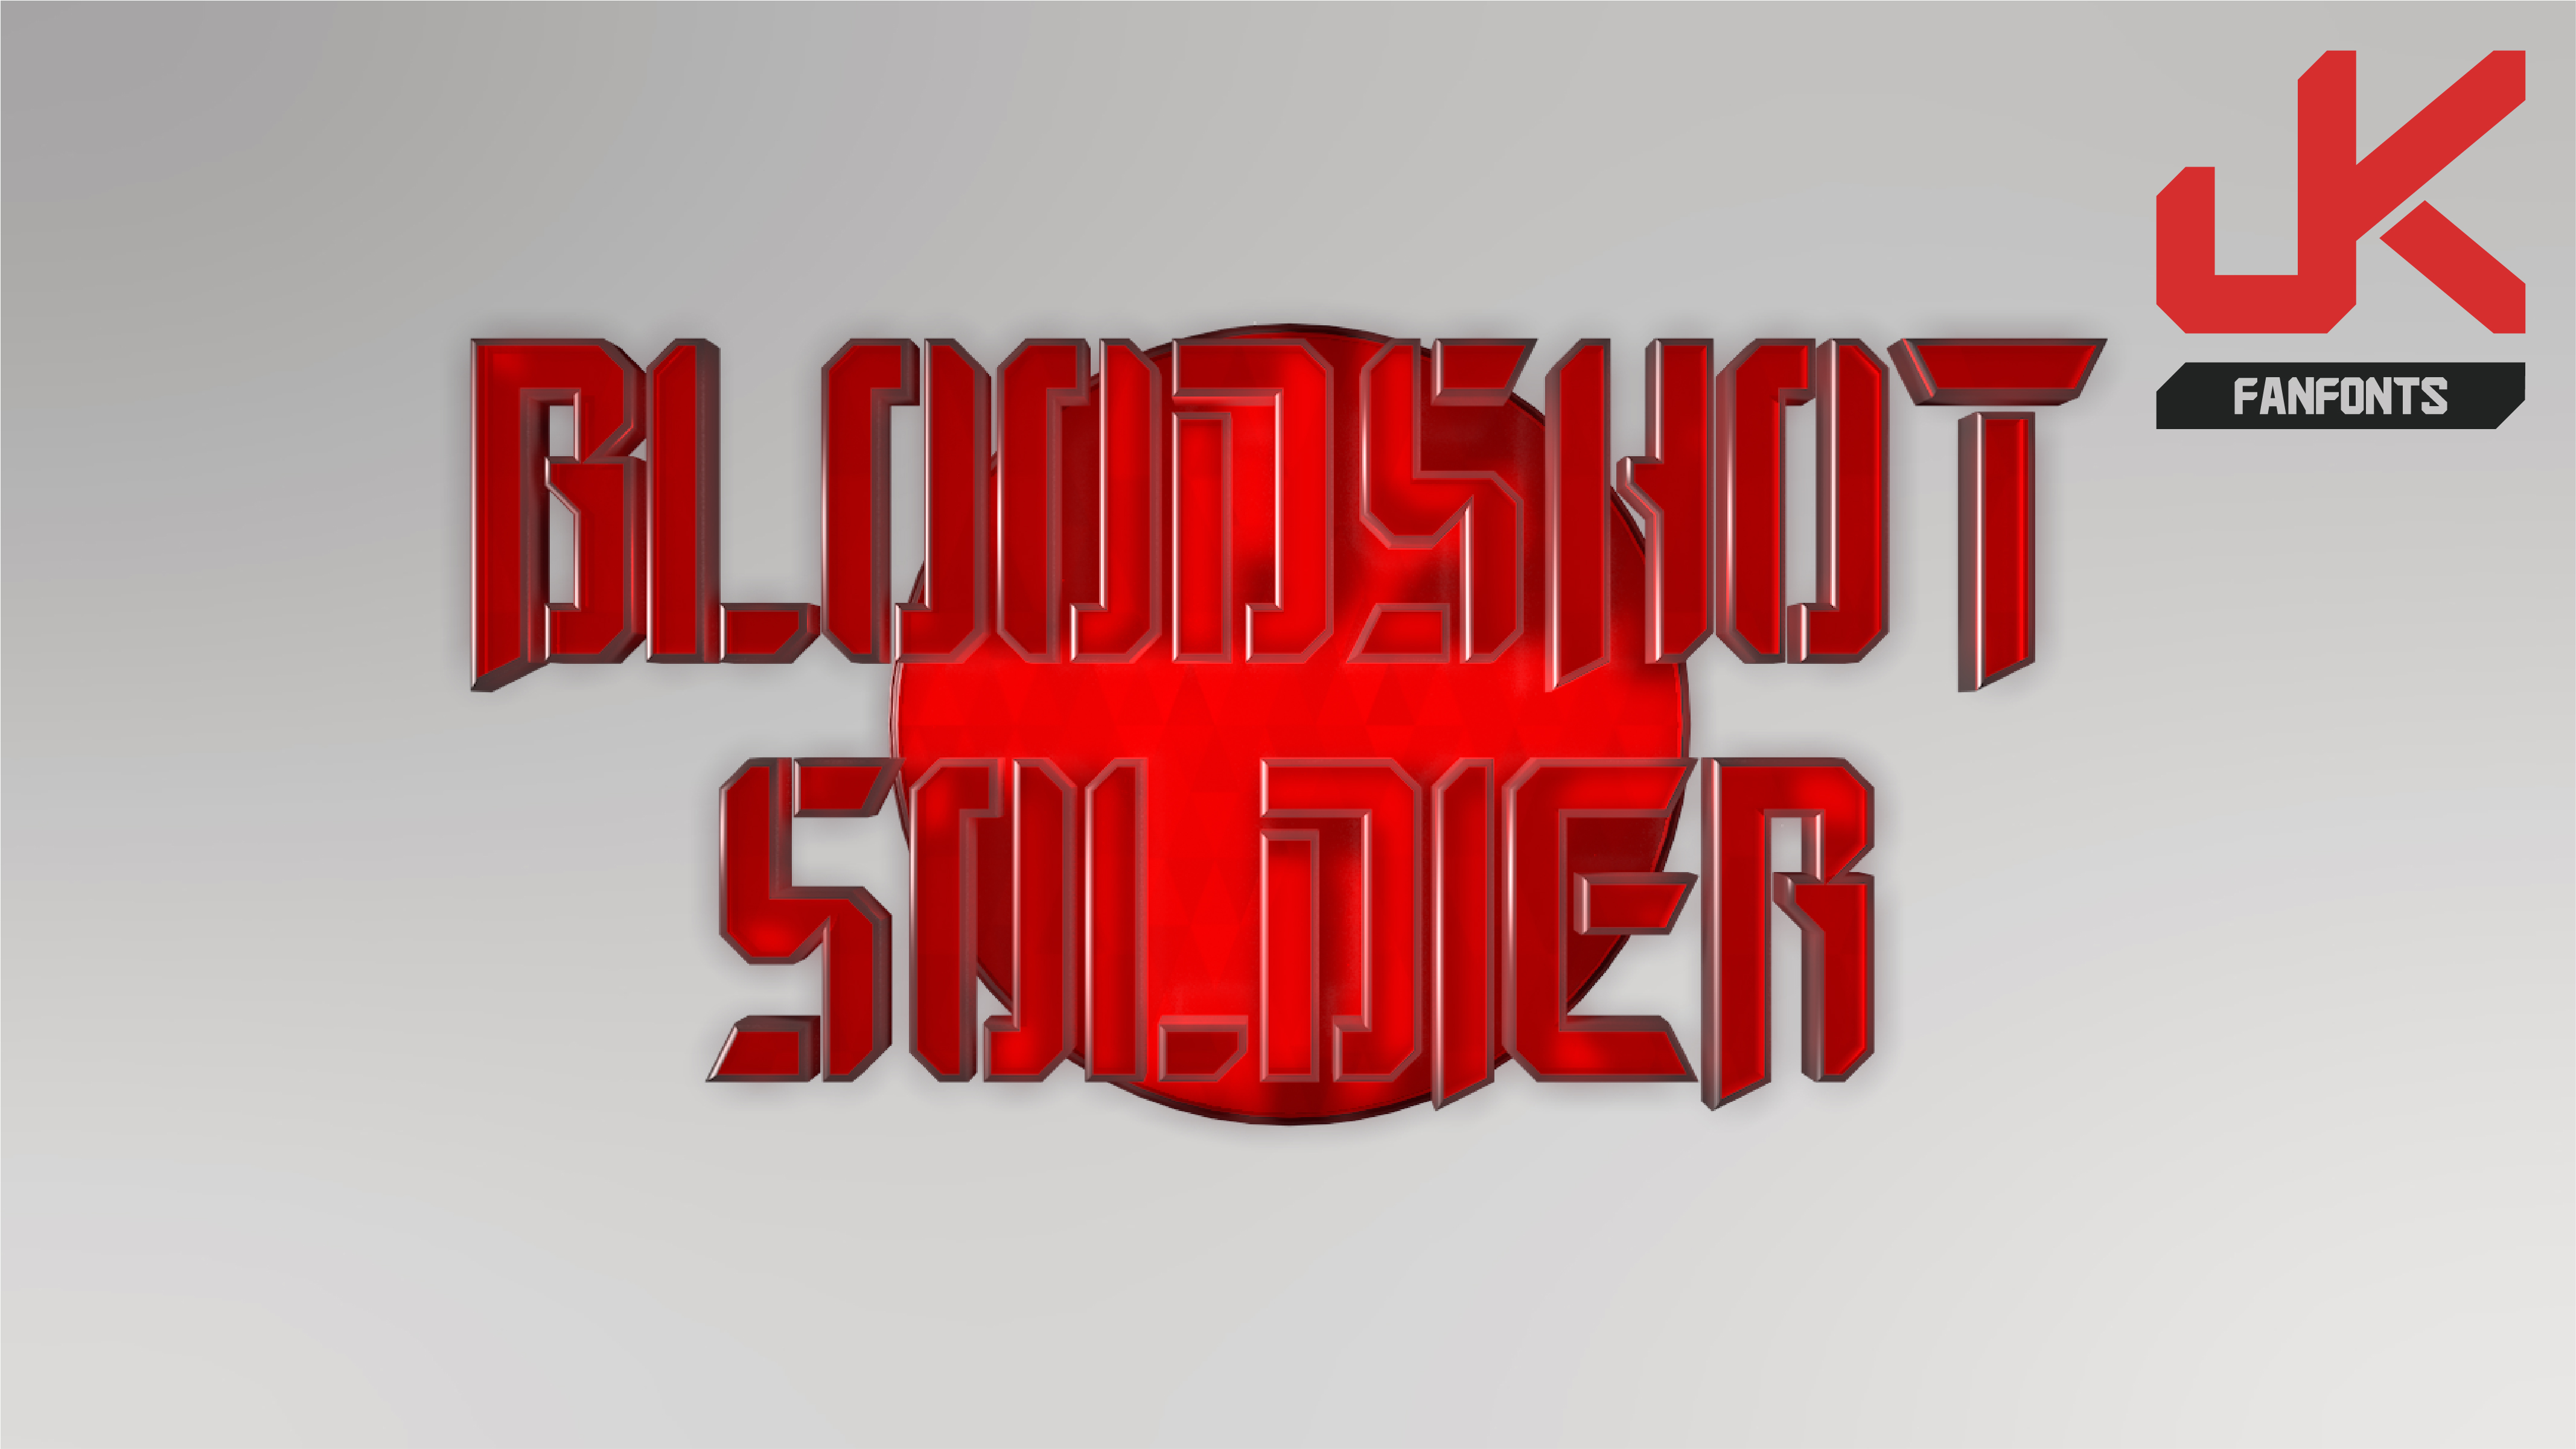 Bloodshot Soldier Demo